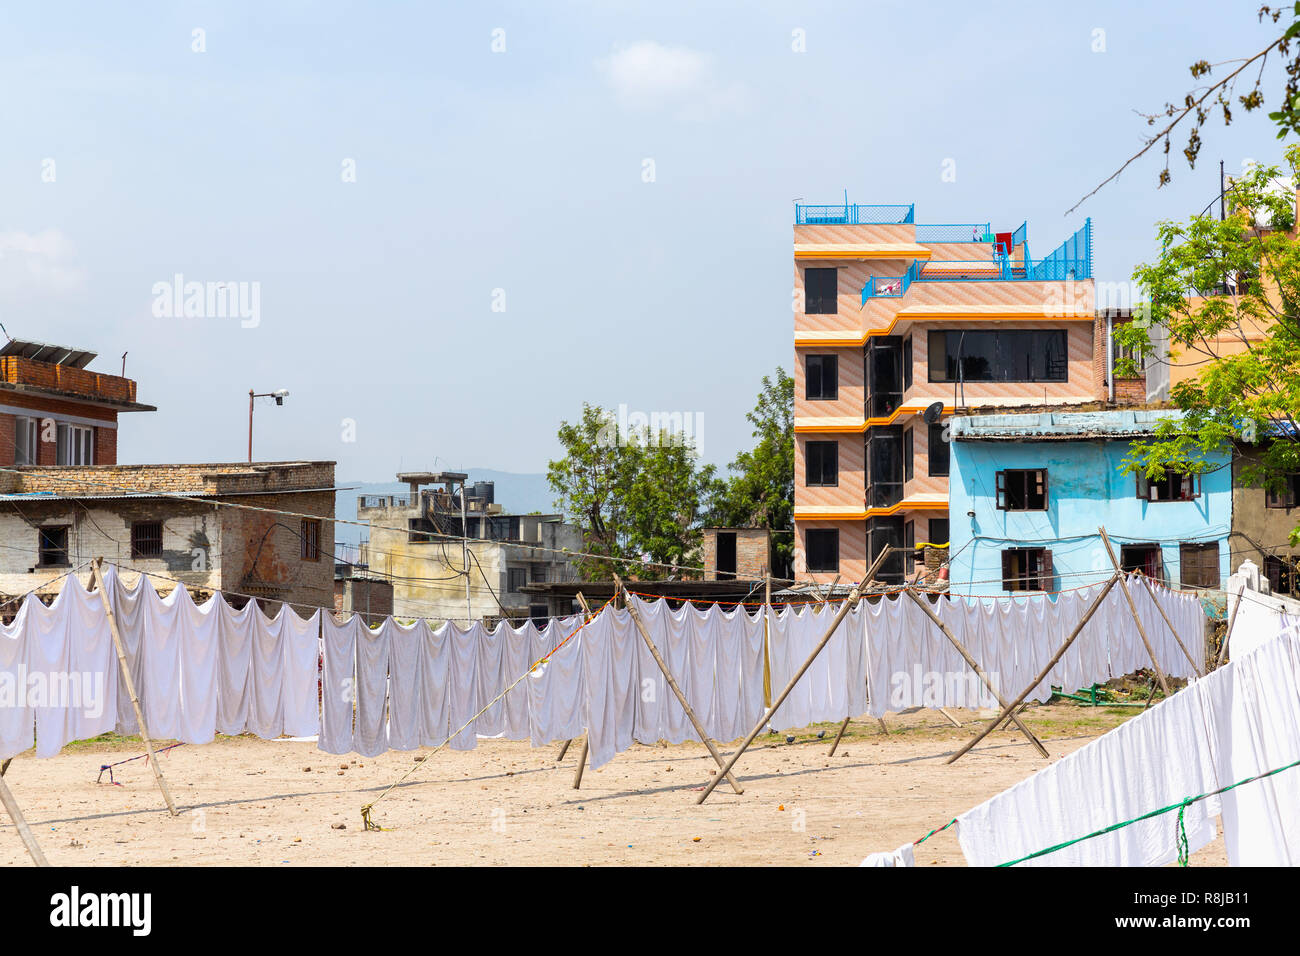 Frisch gewaschen, weißen Laken hängen in Kathmandu, Nepal zu trocknen Stockfoto